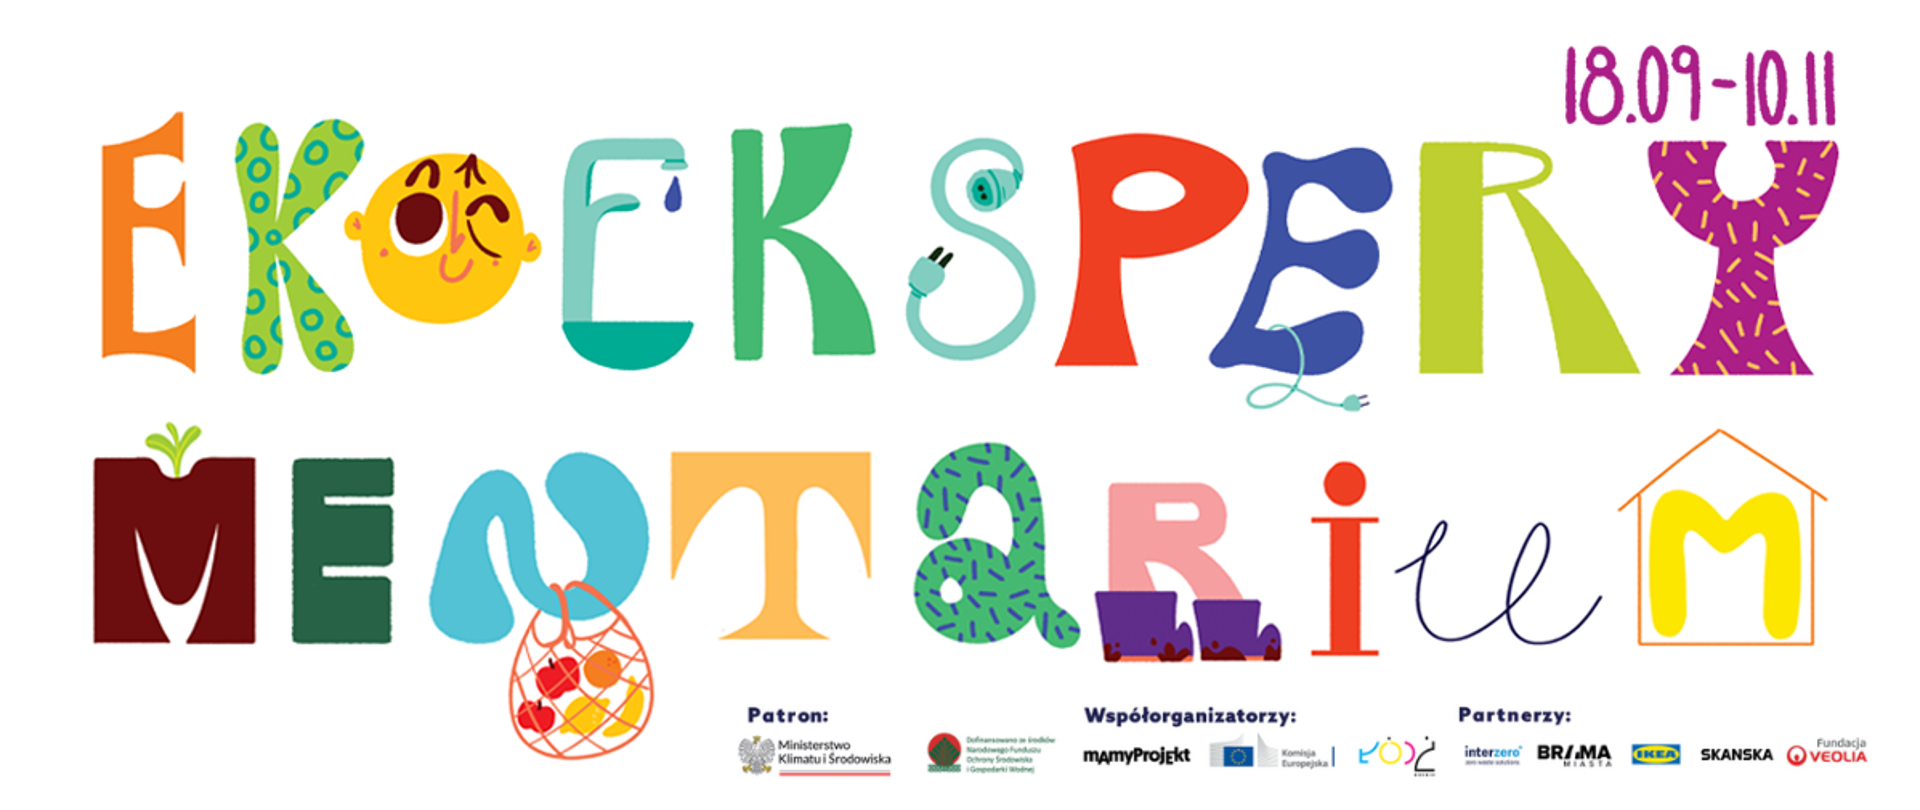 Grafika zawierająca logotyp EkoEksperymentarium, datę wystawy w Łodzi (19.09-10.11.2023 r.) oraz logotypy patrona wystawy, współorganizatorów i partnerów. 